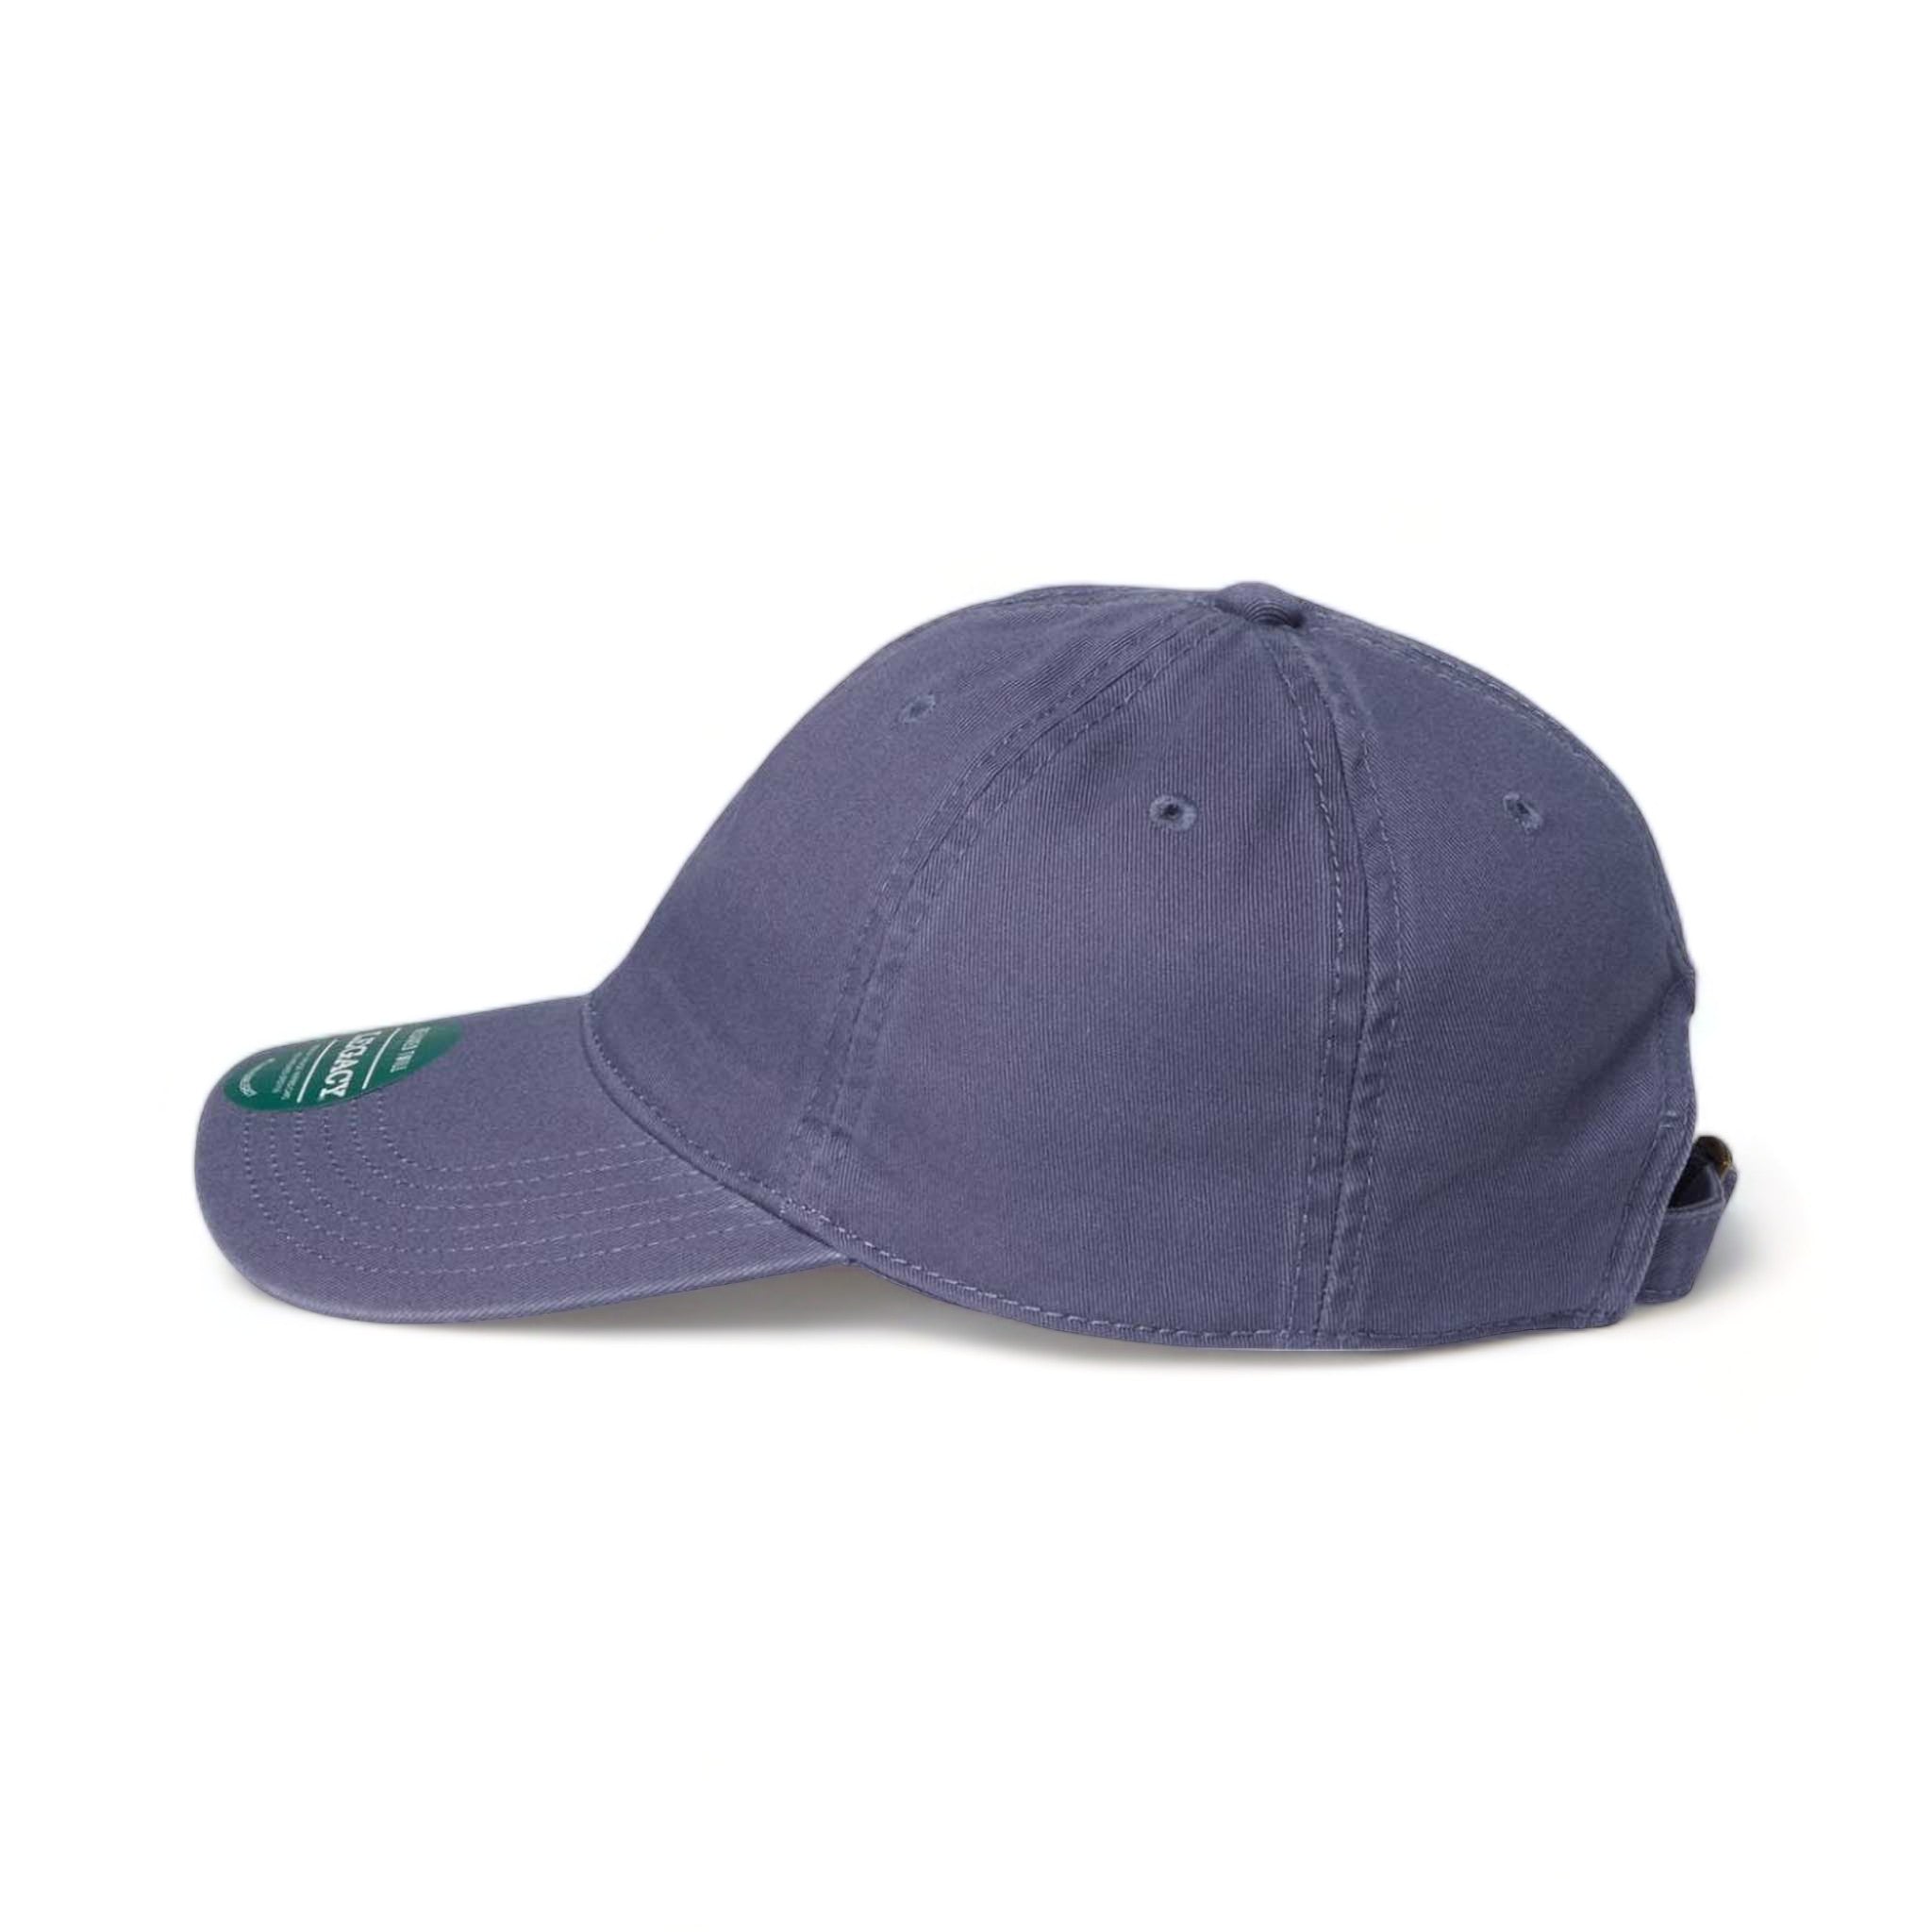 Side view of LEGACY EZA custom hat in slate blue